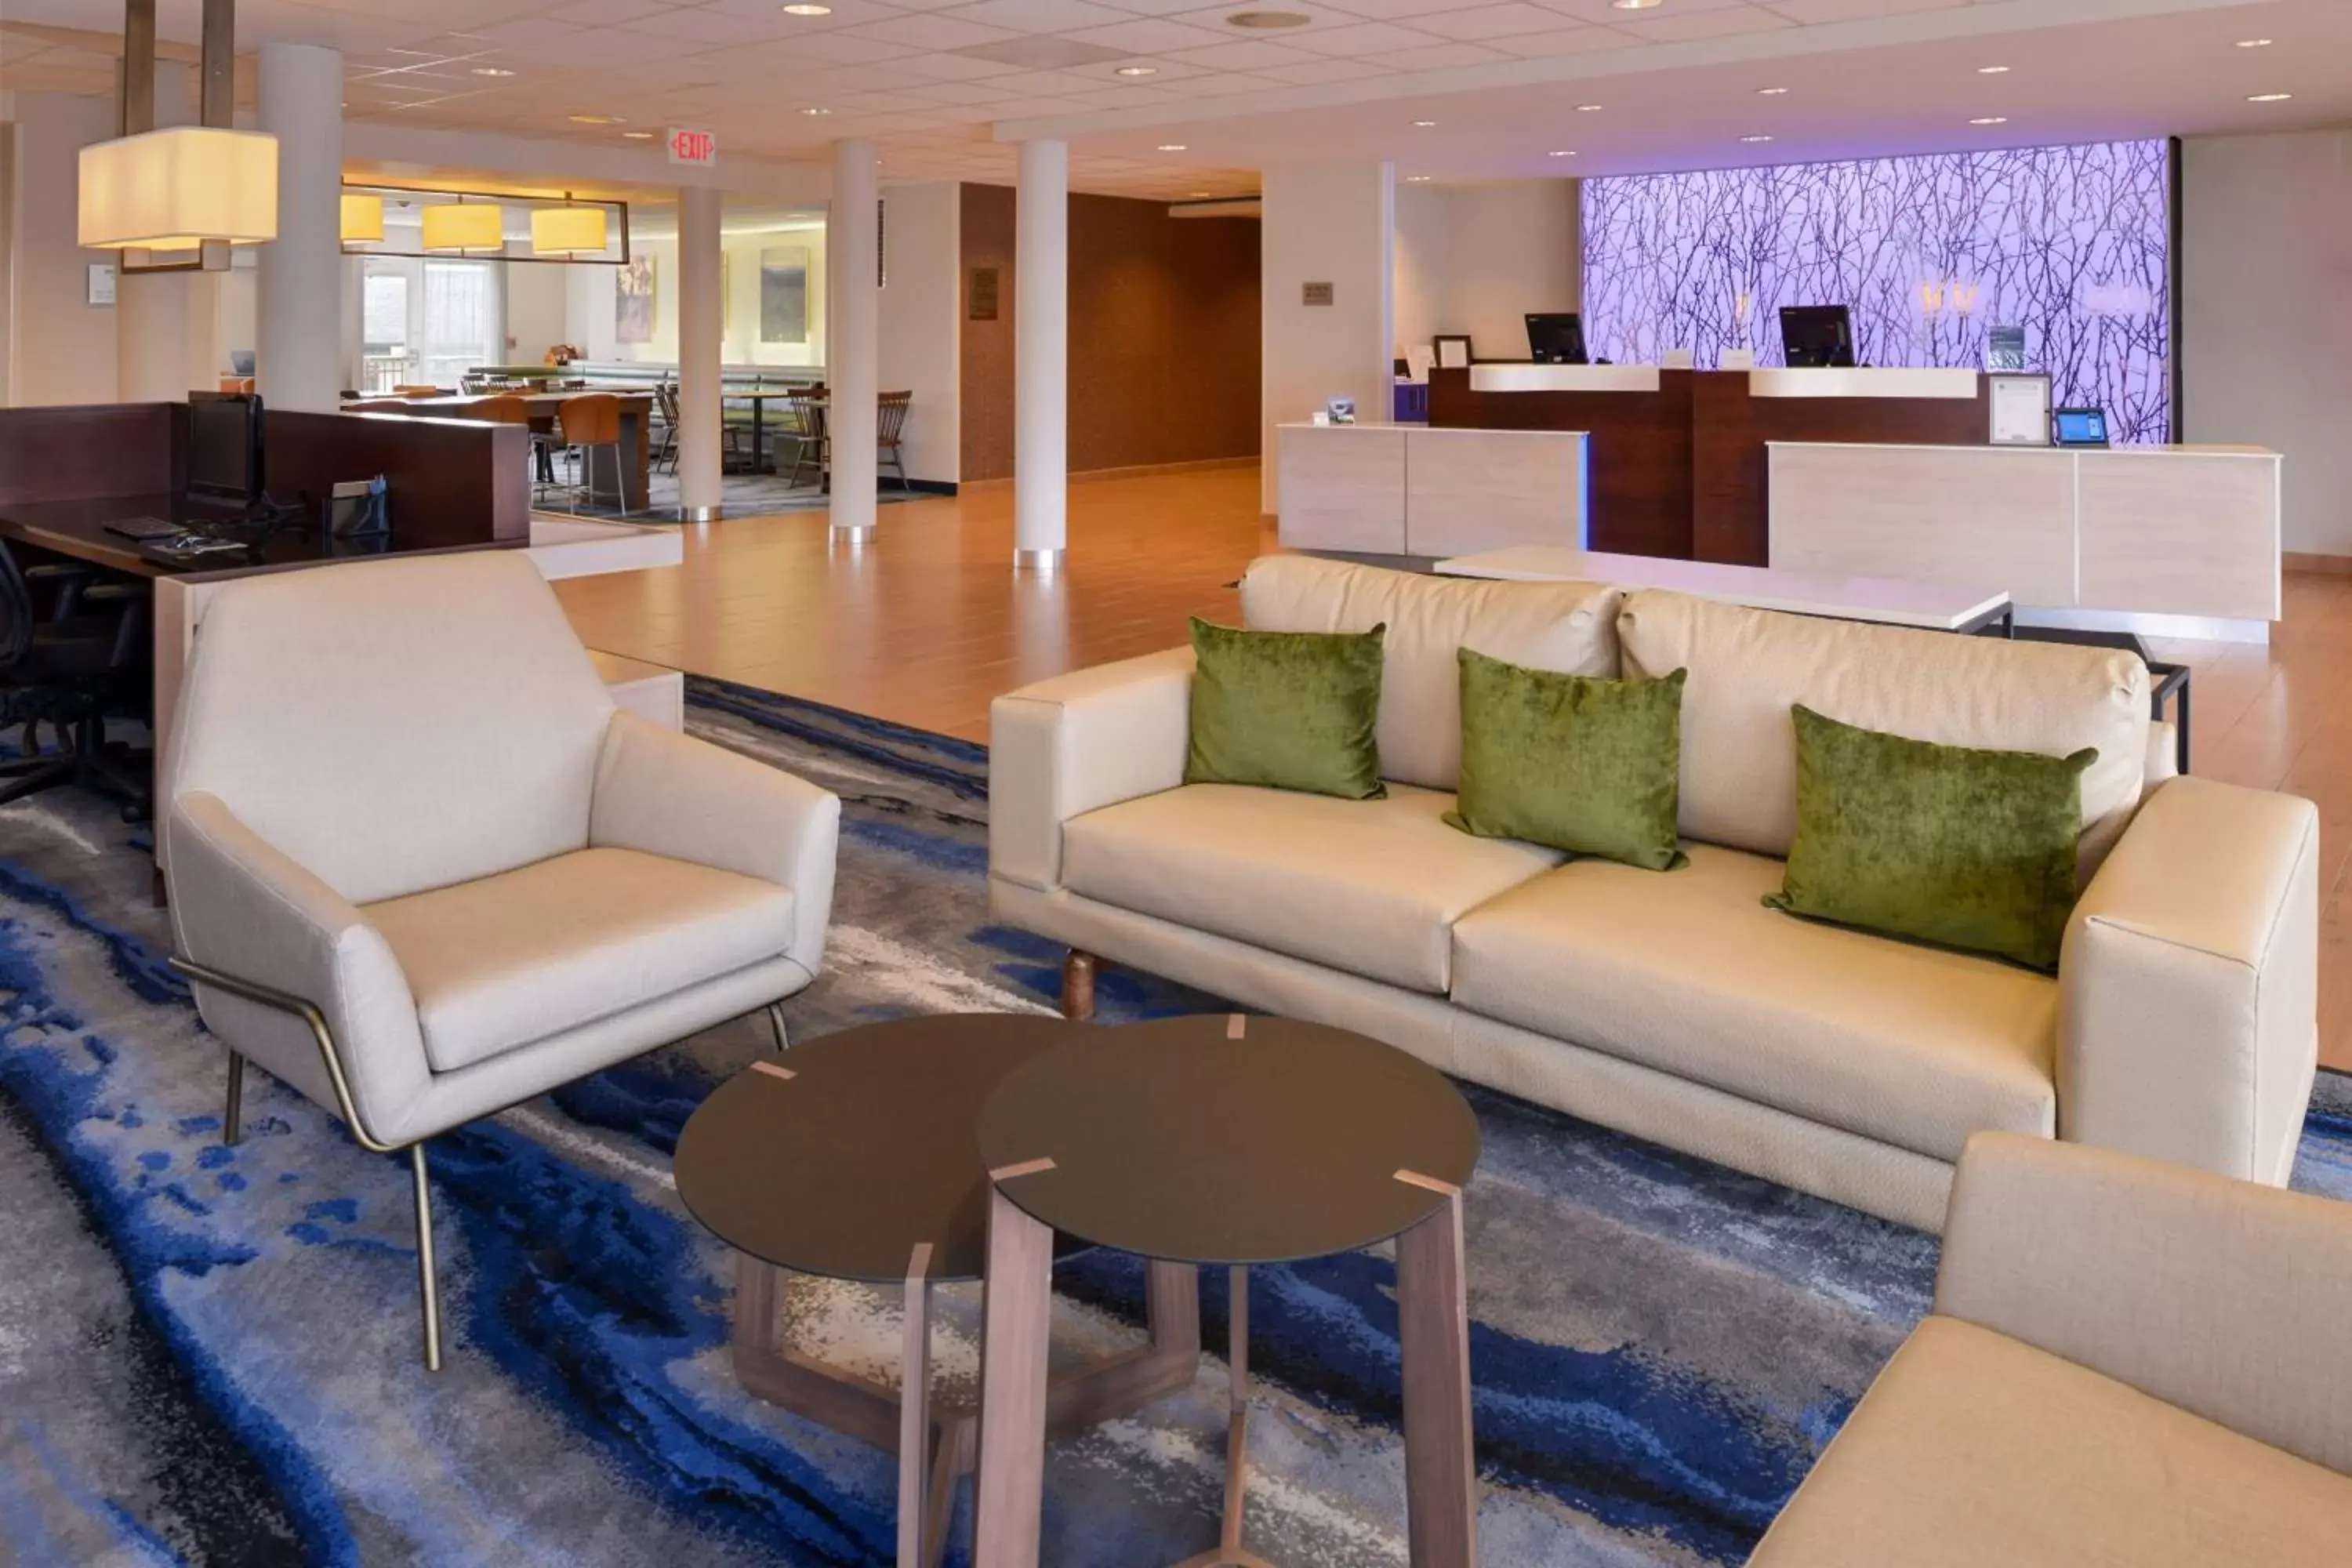 Lobby or reception, Lobby/Reception in Fairfield Inn & Suites by Marriott Cedar Rapids